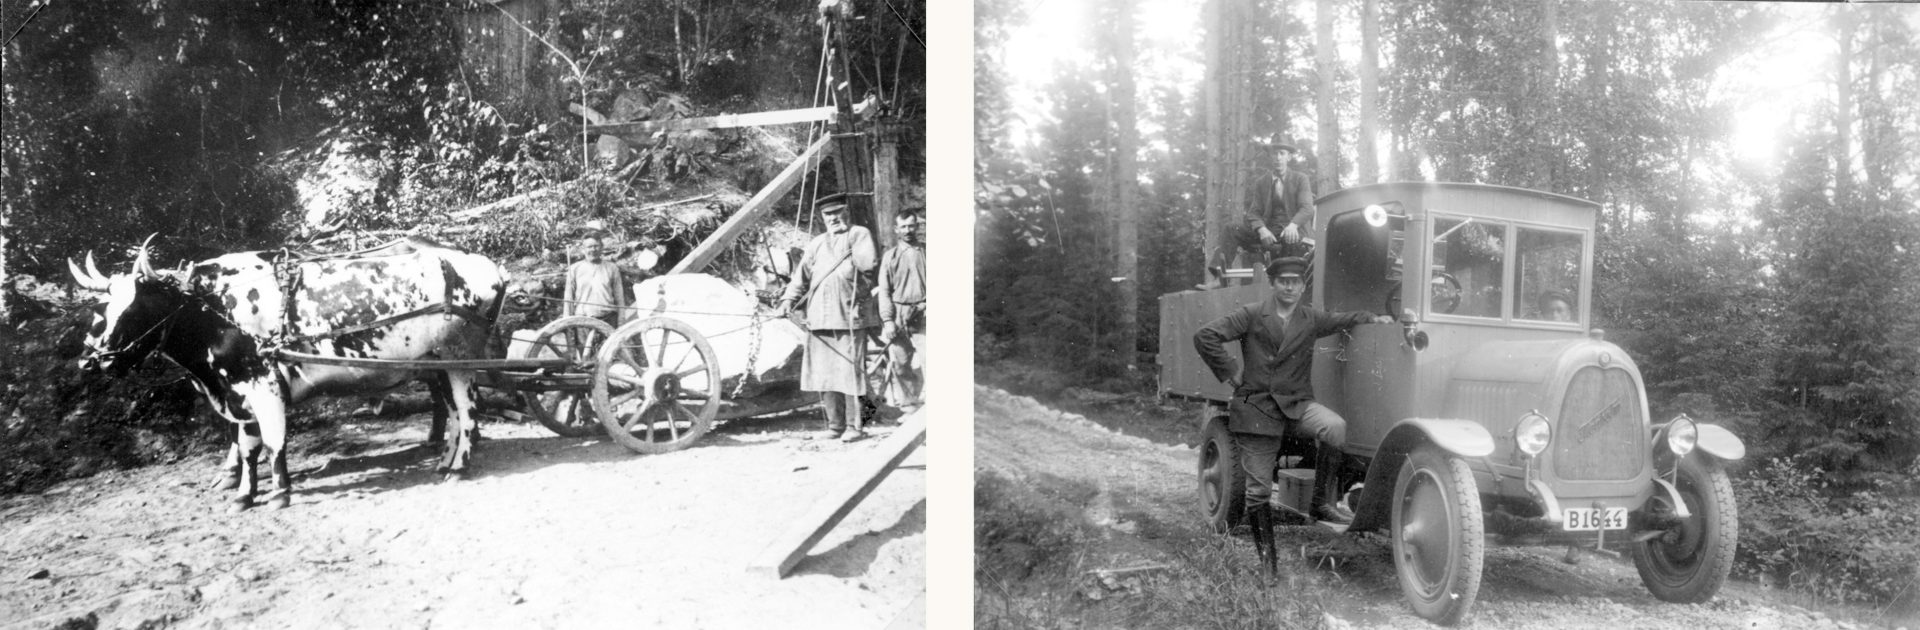 Två svartvita fotografier, en visar tre män invid en kärra förspänd med en oxe, den andra en ung man invid en lastbil.